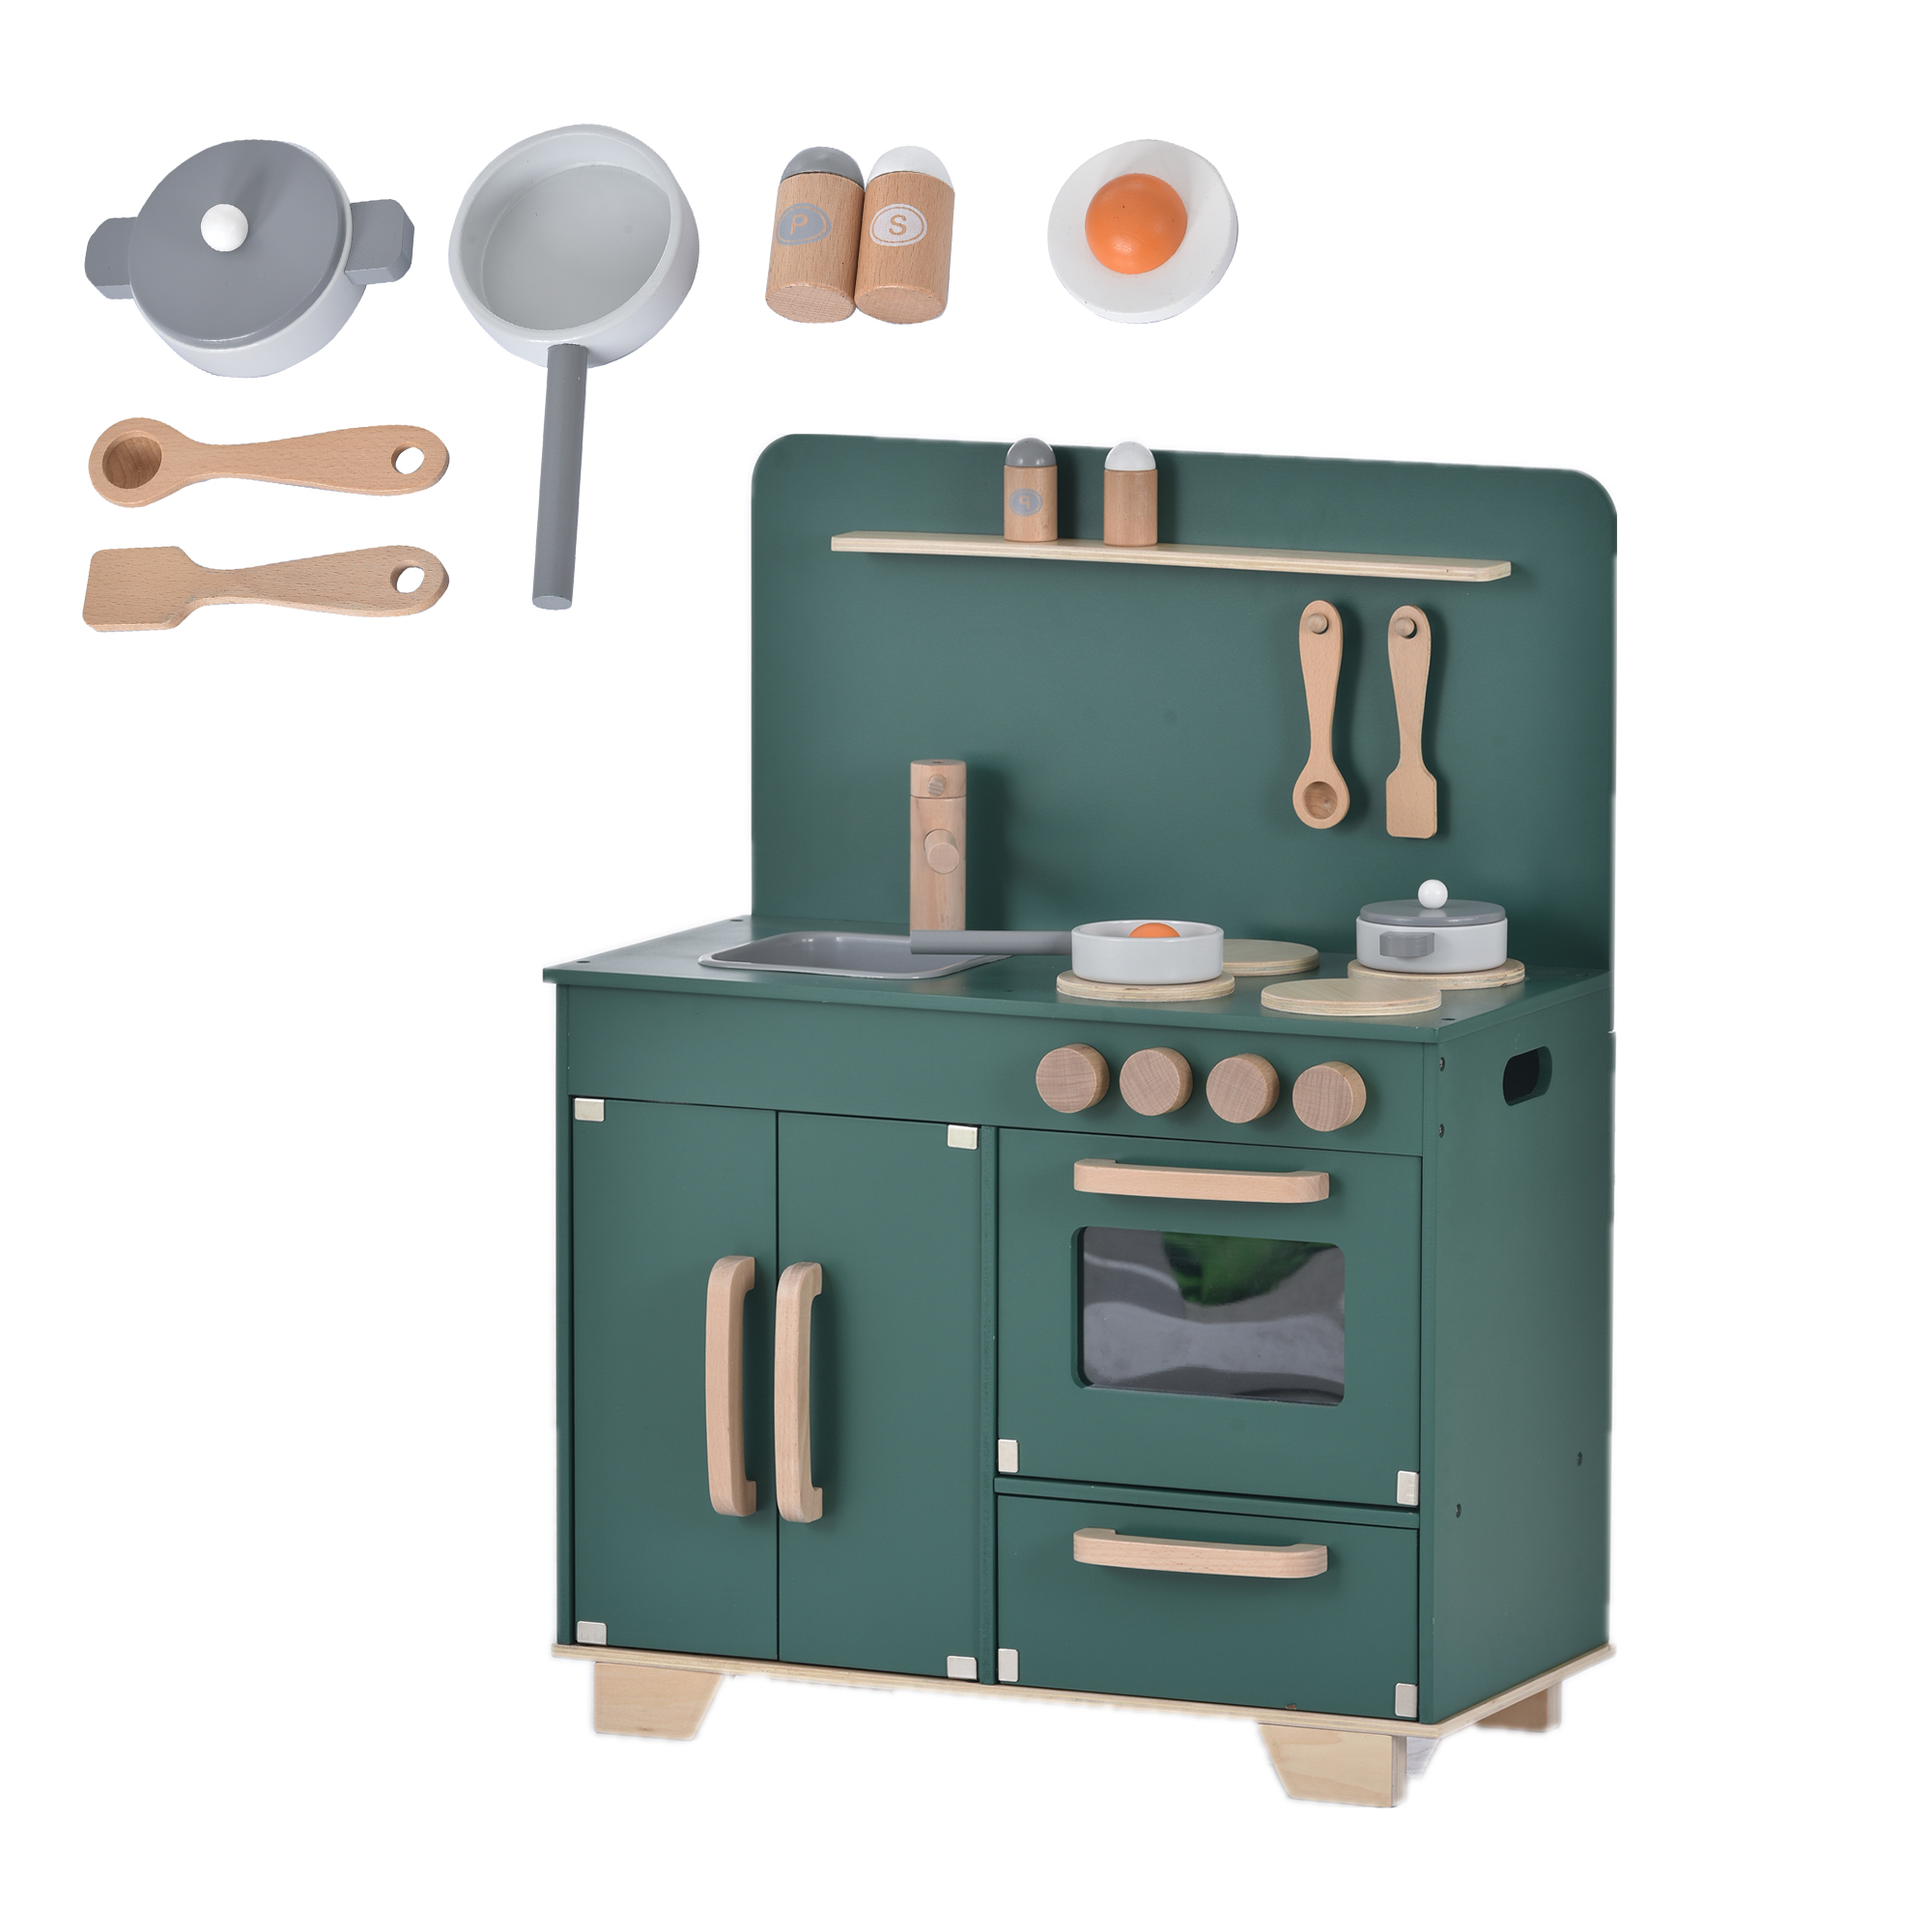 おままごと キッチン 木製 誕生日 調理器具付き 知育玩具 コンロミニ 